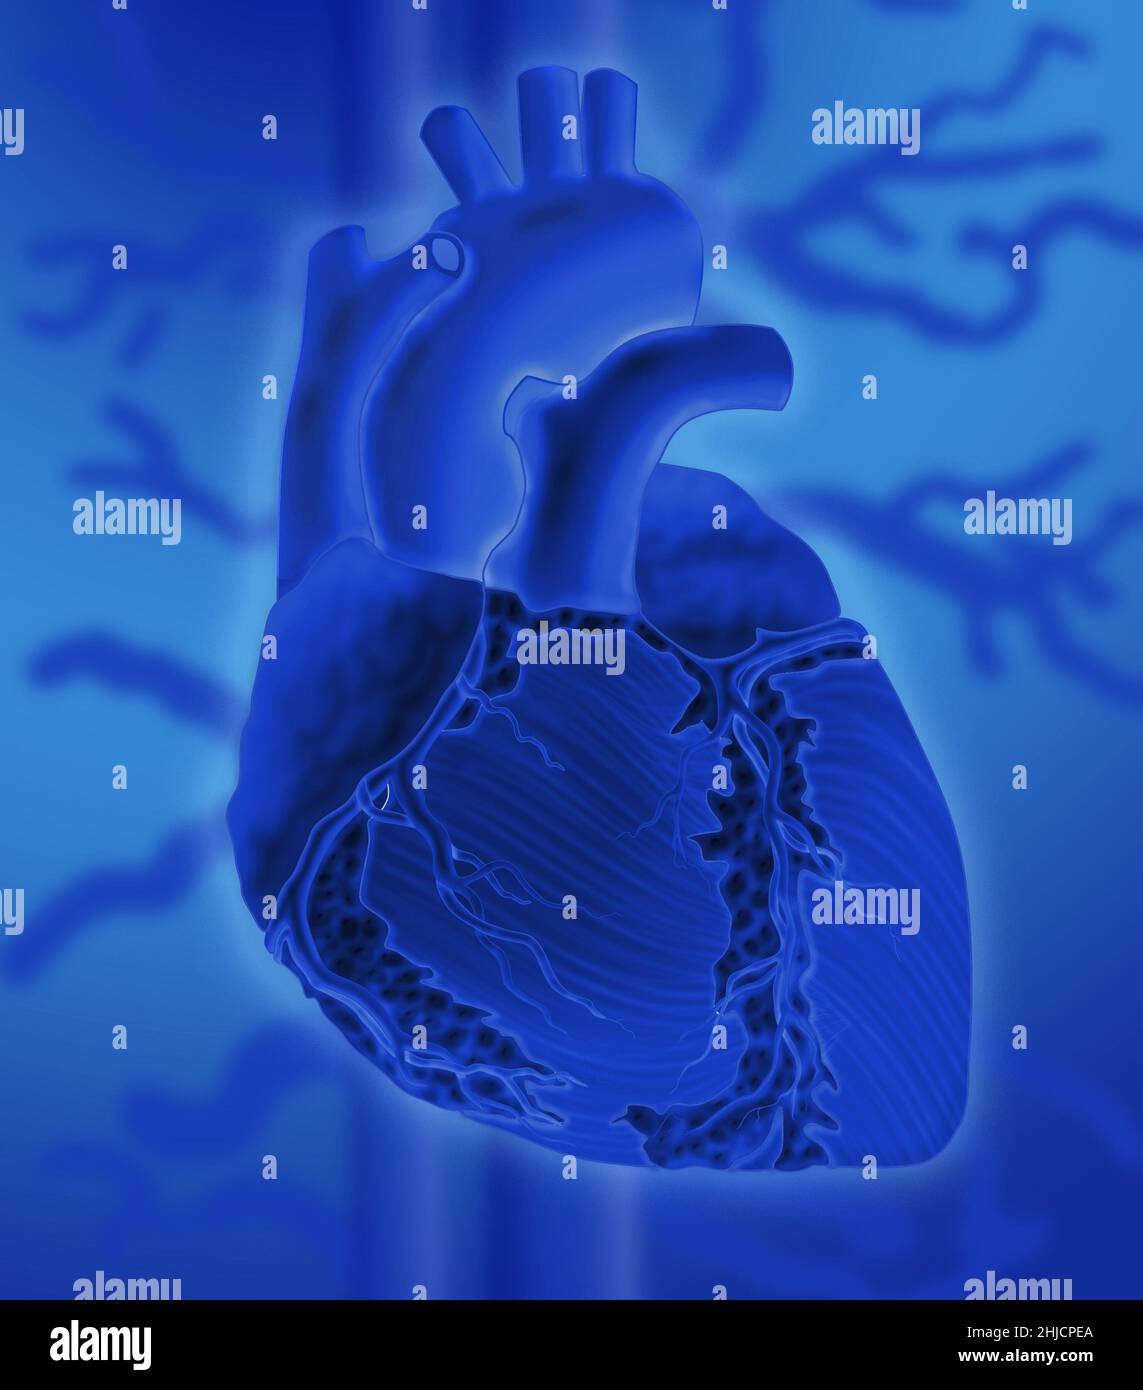 Konzeptuelles Bild des menschlichen Herzens auf einem farbenfrohen Hintergrund. Stockfoto